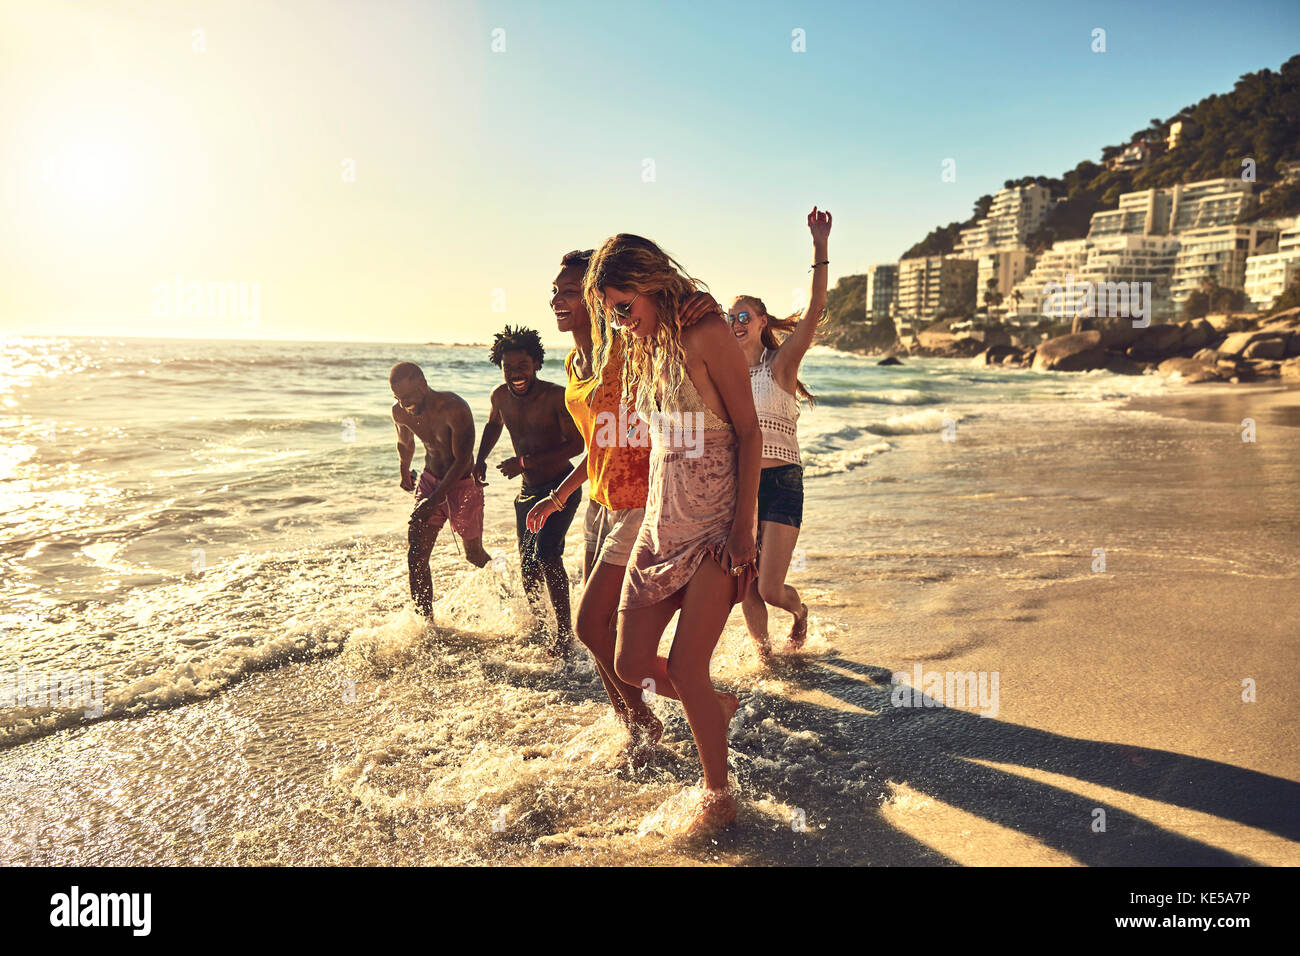 Spielerische junge Freunde, die im Sommer im sonnigen Meer surfen Stockfoto